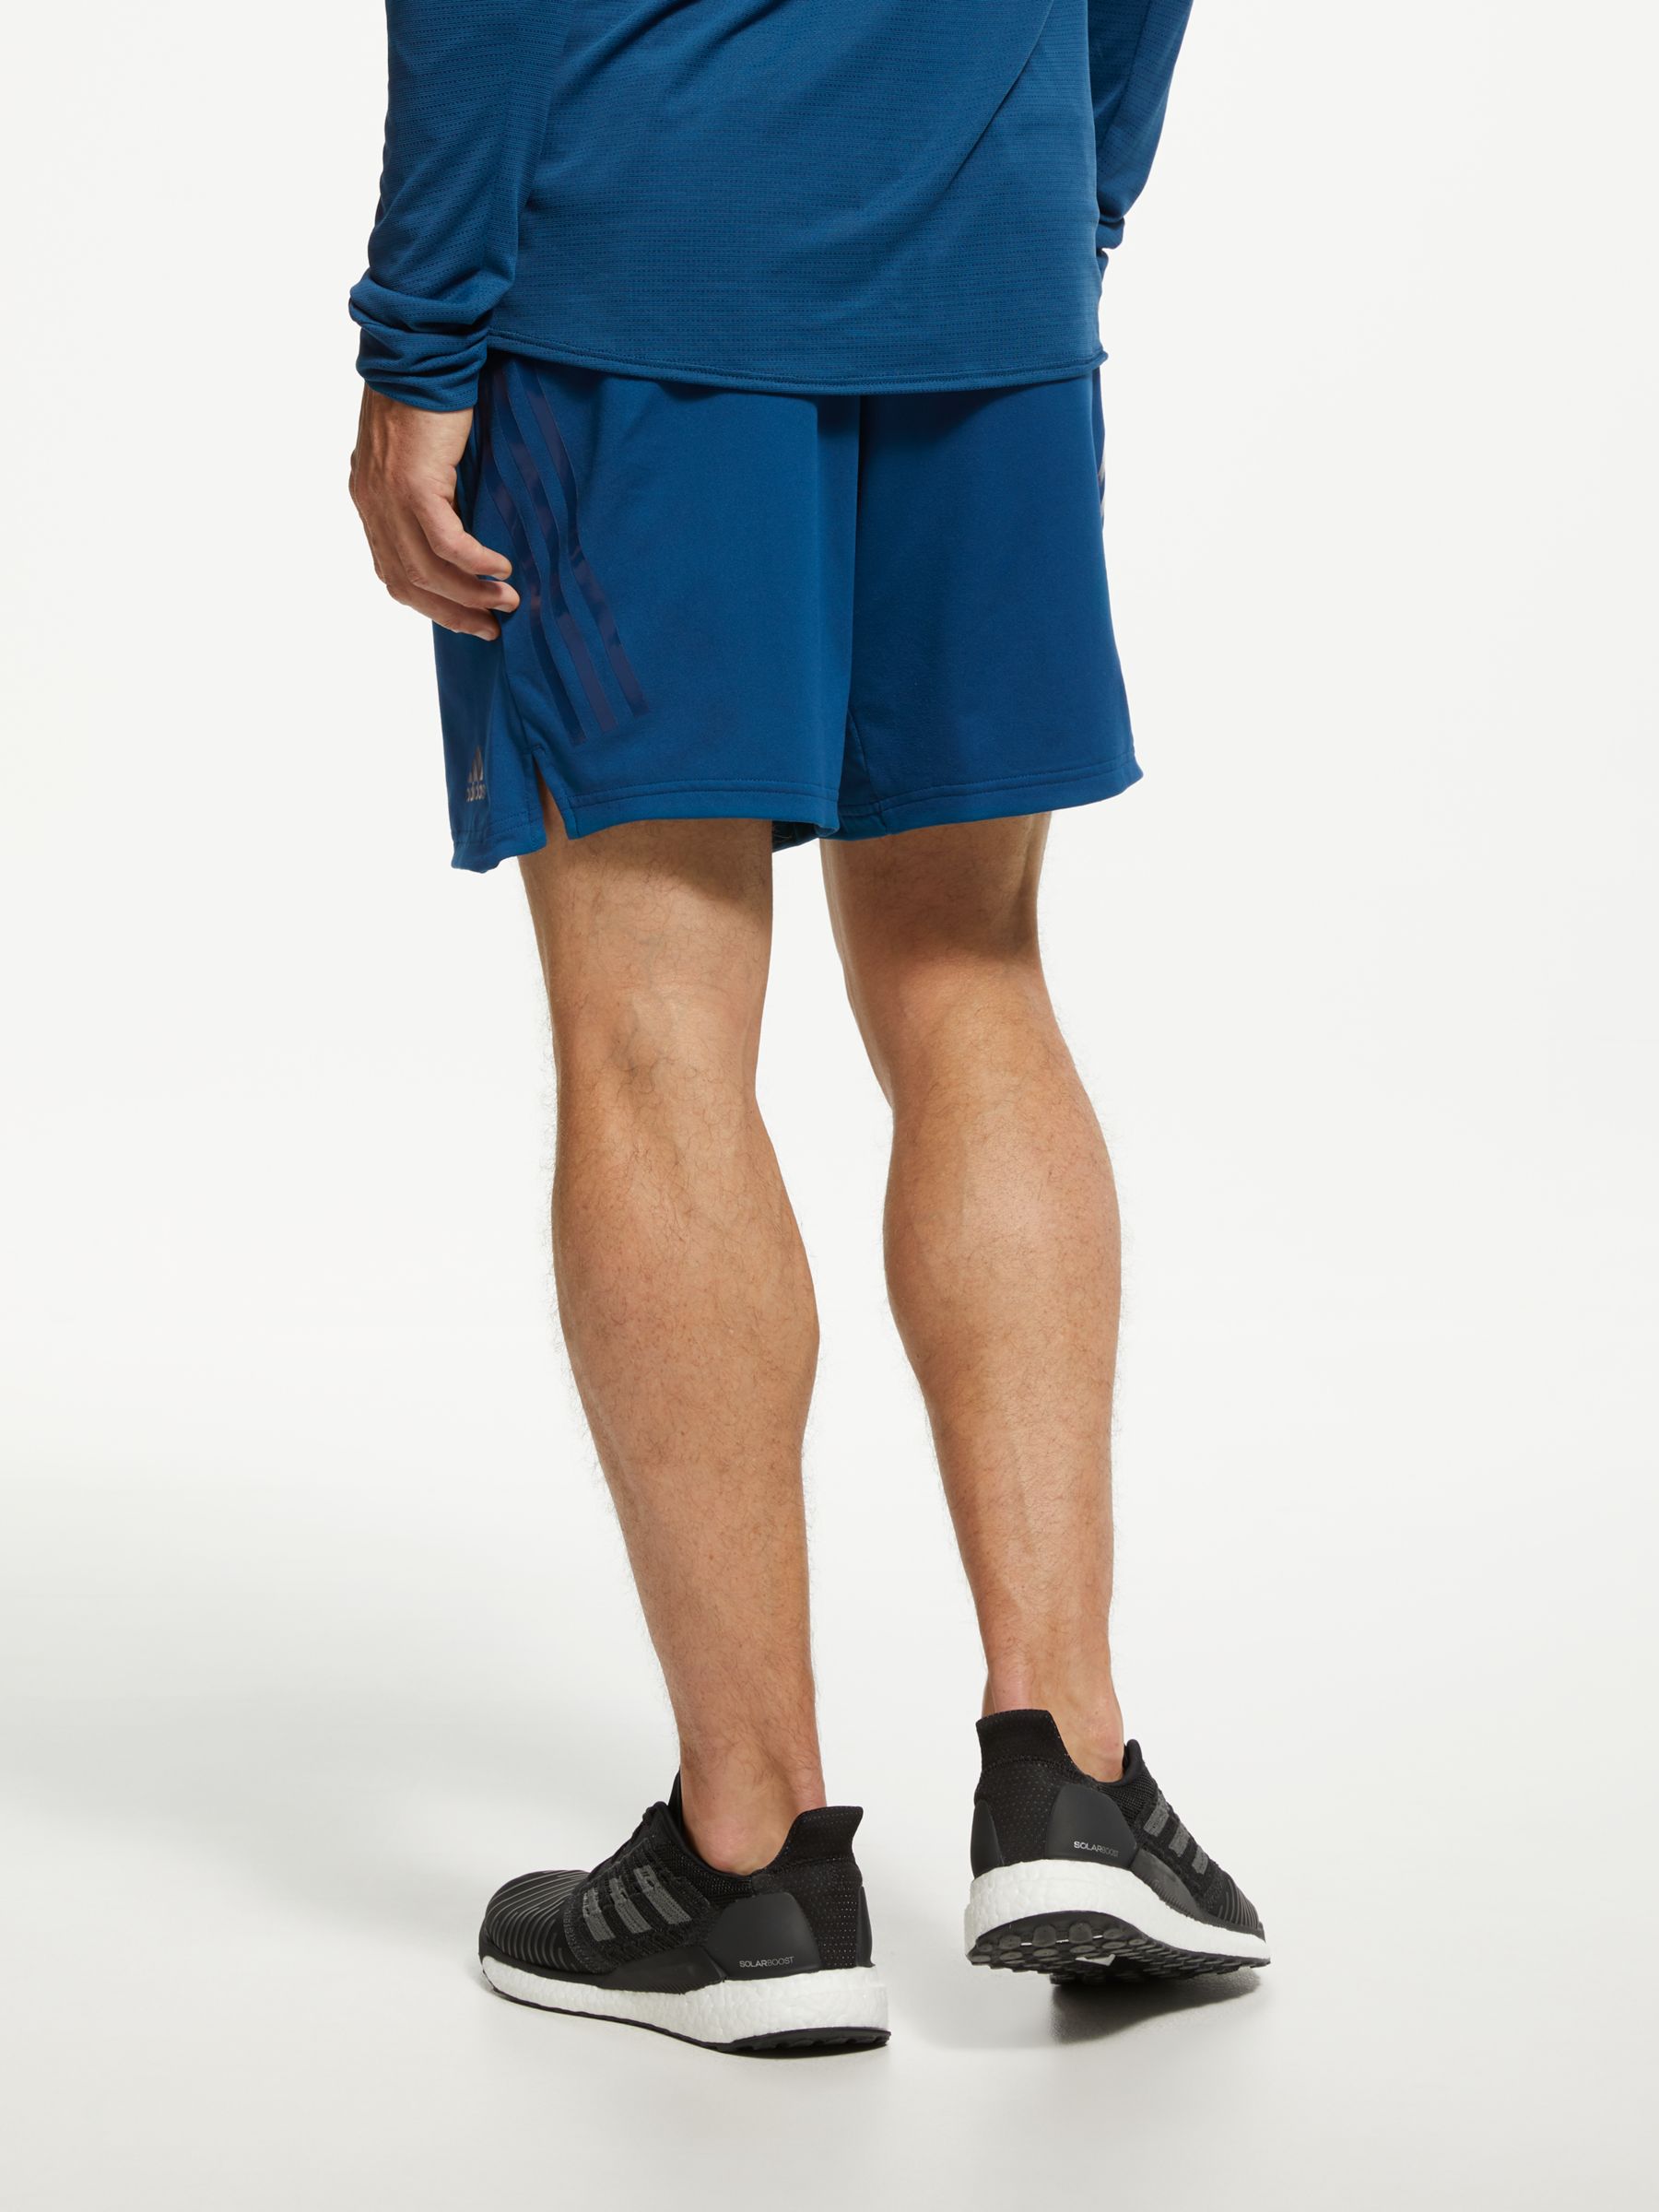 adidas 6 inch shorts